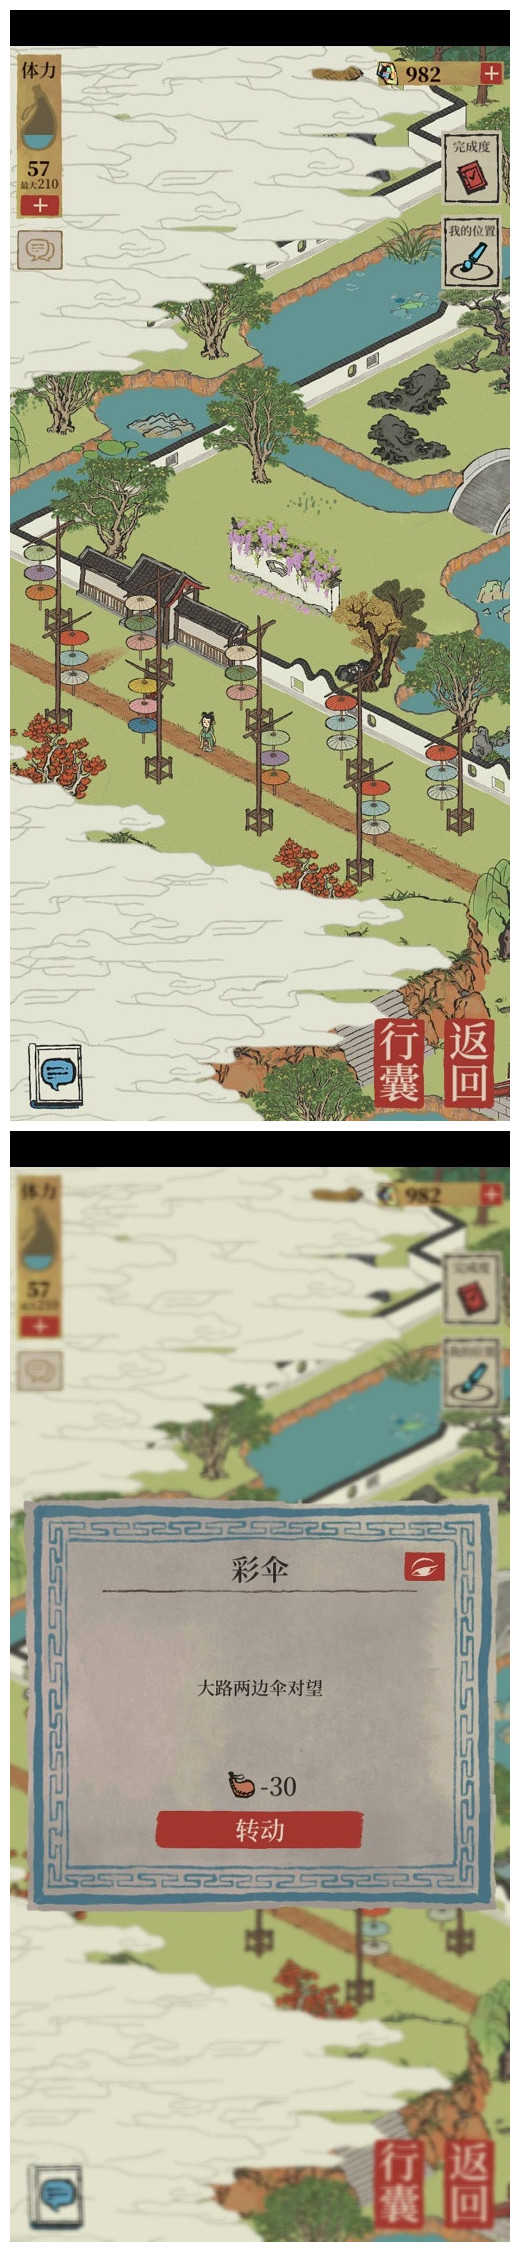 《江南百景图》大路两边伞对望转动技巧分享